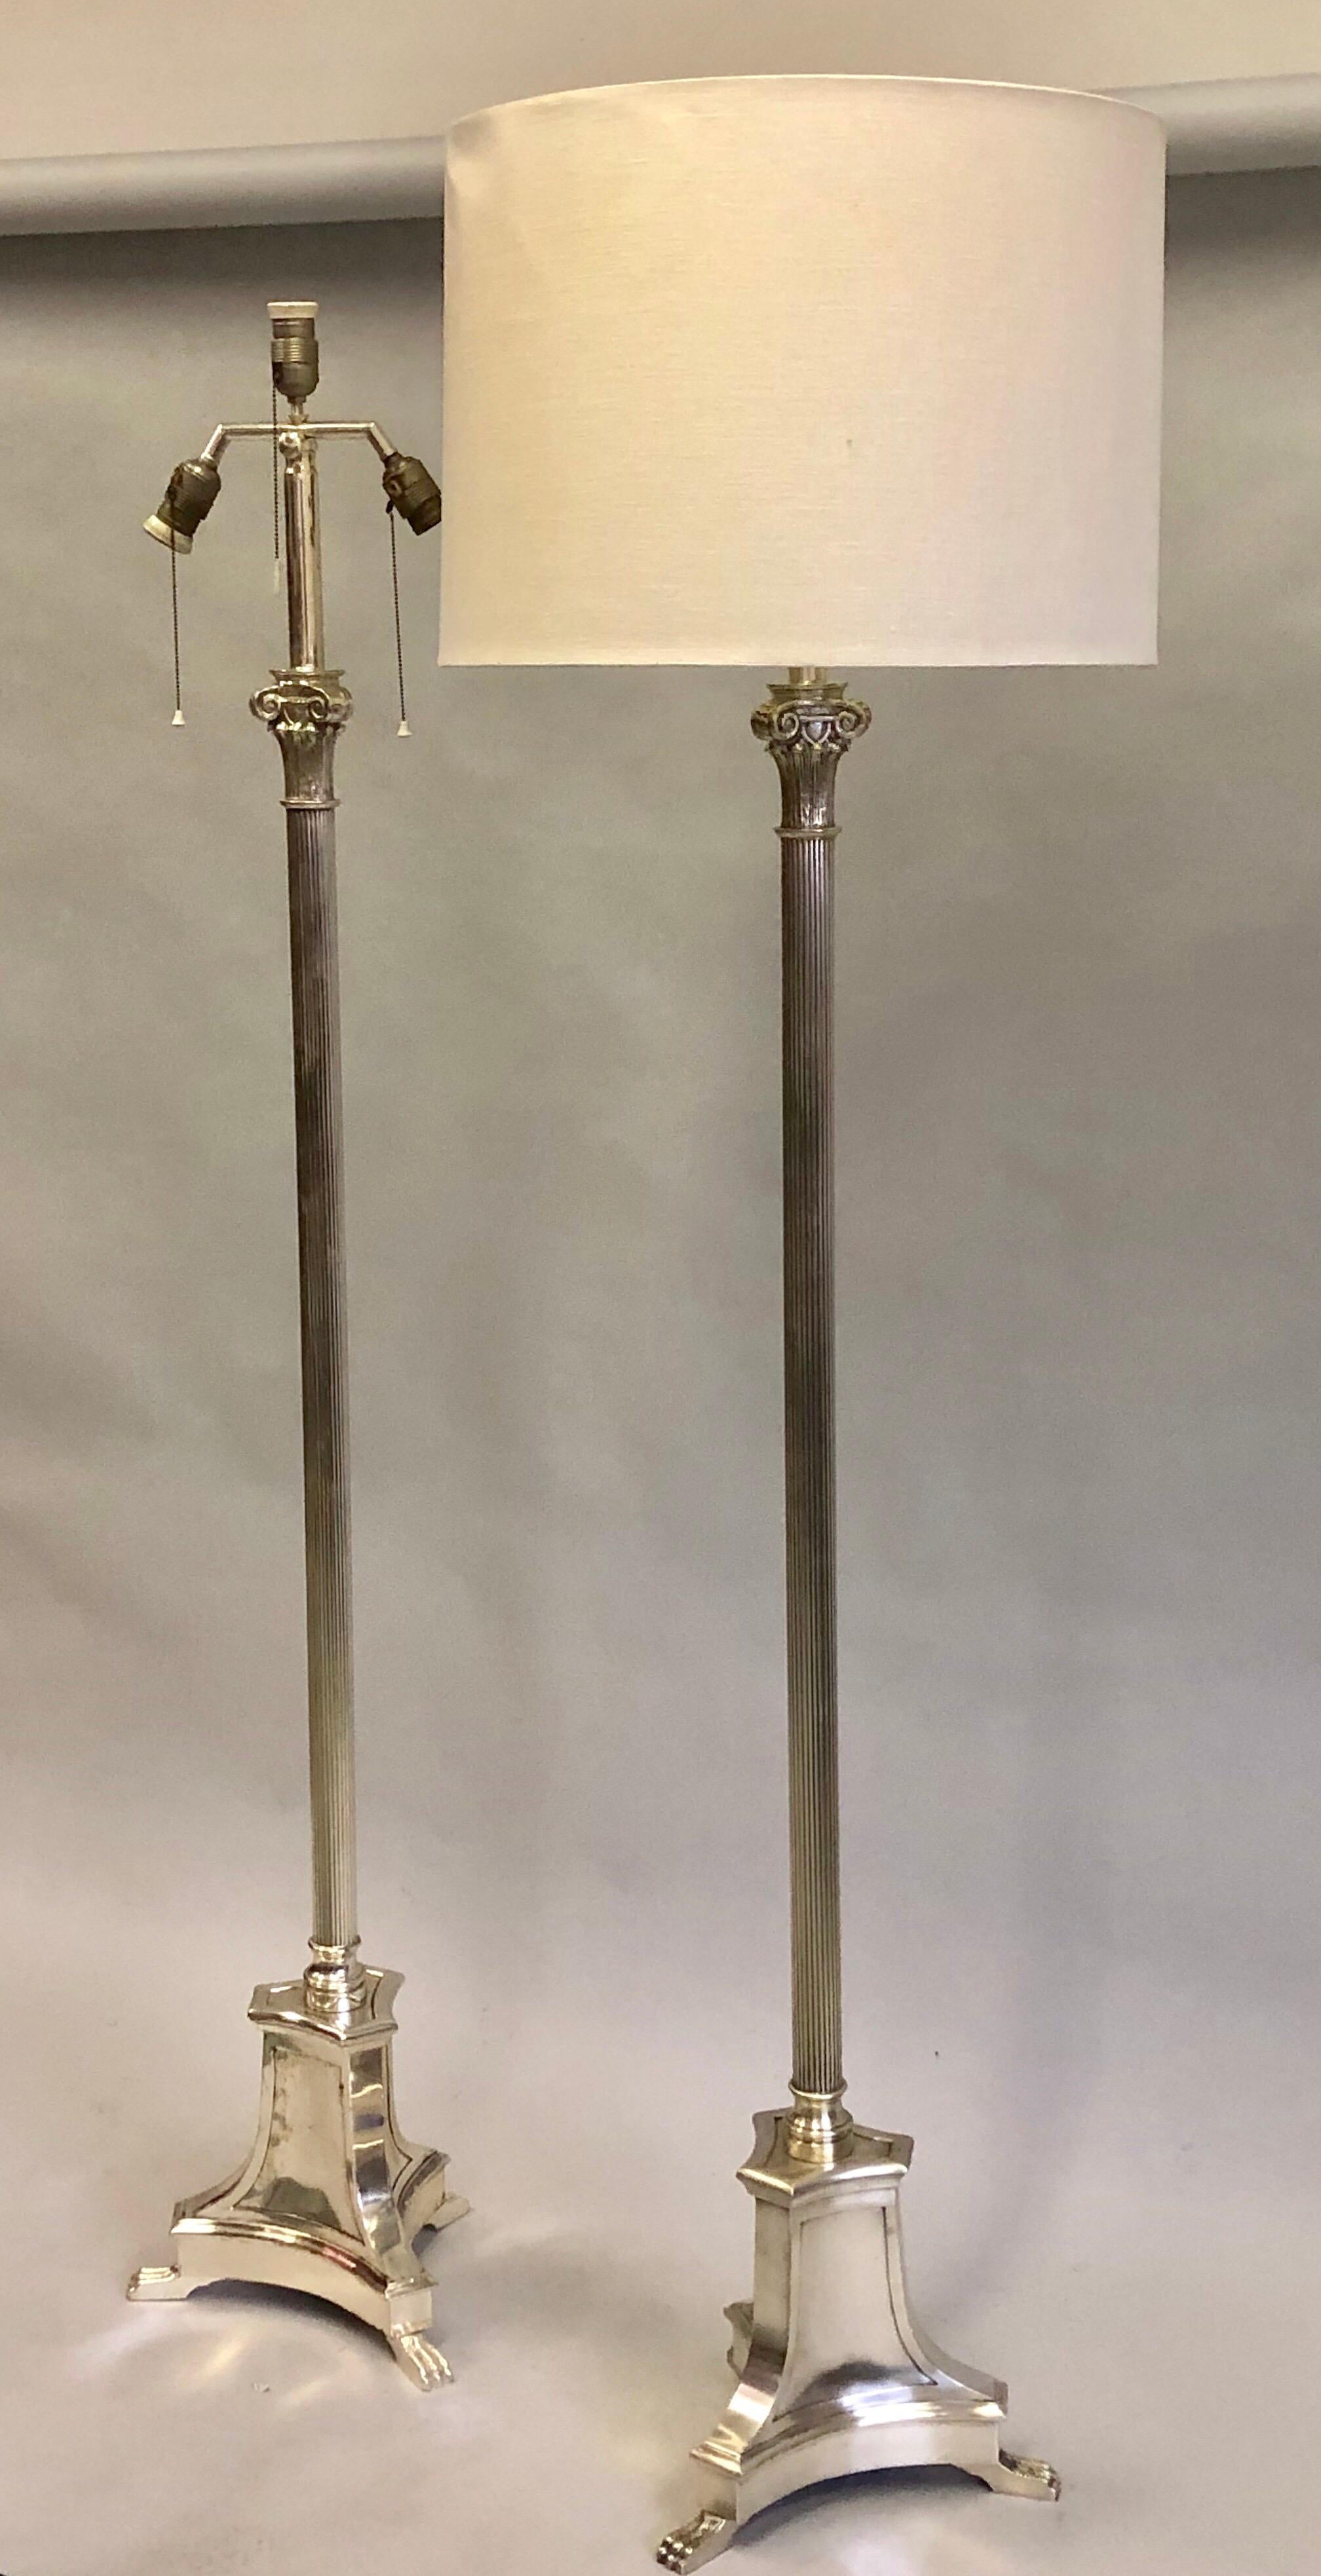 Seltenes Paar französischer Stehlampen aus neoklassischem Silber aus der Jahrhundertmitte, Andre Arbus zugeschrieben, um 1930-1940. 

Die ikonischen Stehlampen stehen auf einem dreieckigen Sockel mit 3 Klauenfüßen, jeder Fuß mit 3 Ziffern. Der